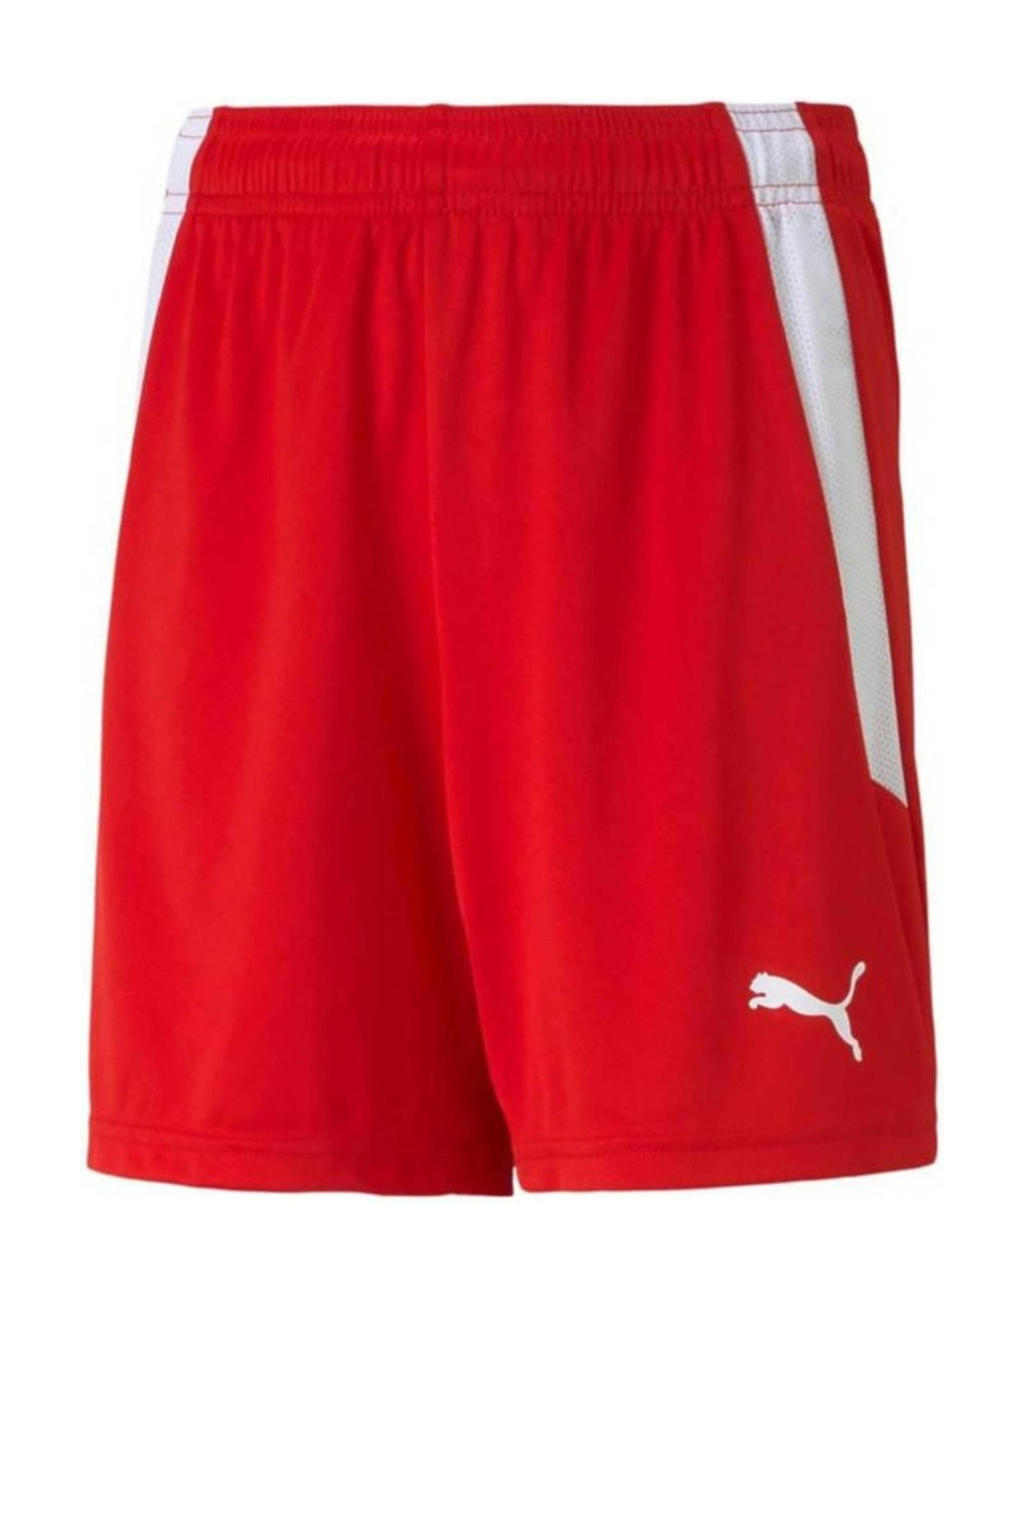 Rood en witte jongens en meisjes Puma Junior sportshort teamLIGA van polyester met regular fit, regular waist en elastische tailleband met koord